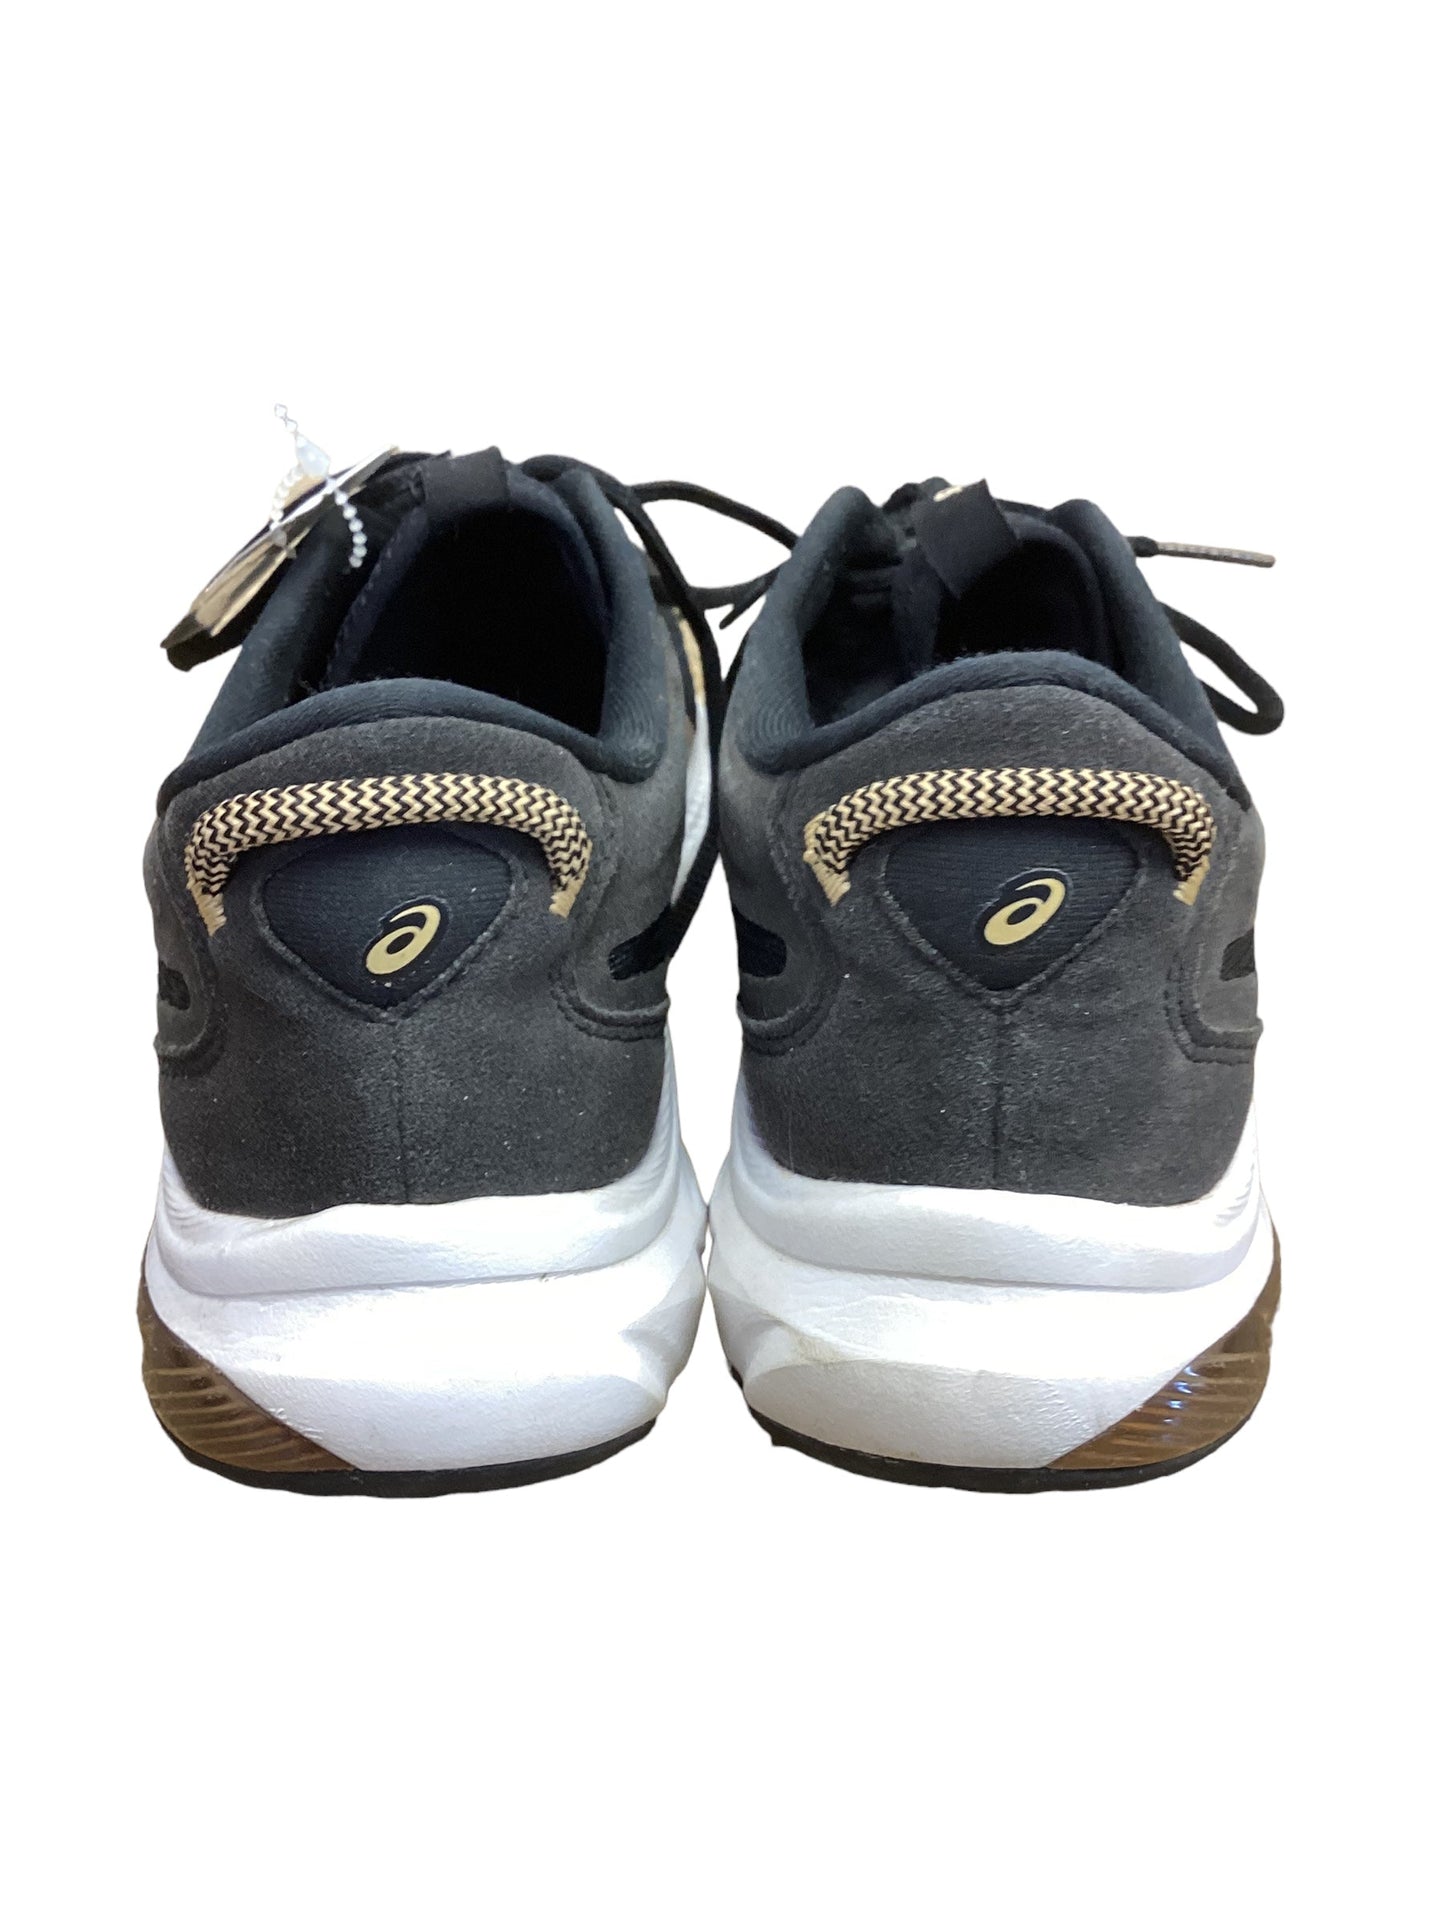 Black Shoes Athletic Asics, Size 7.5